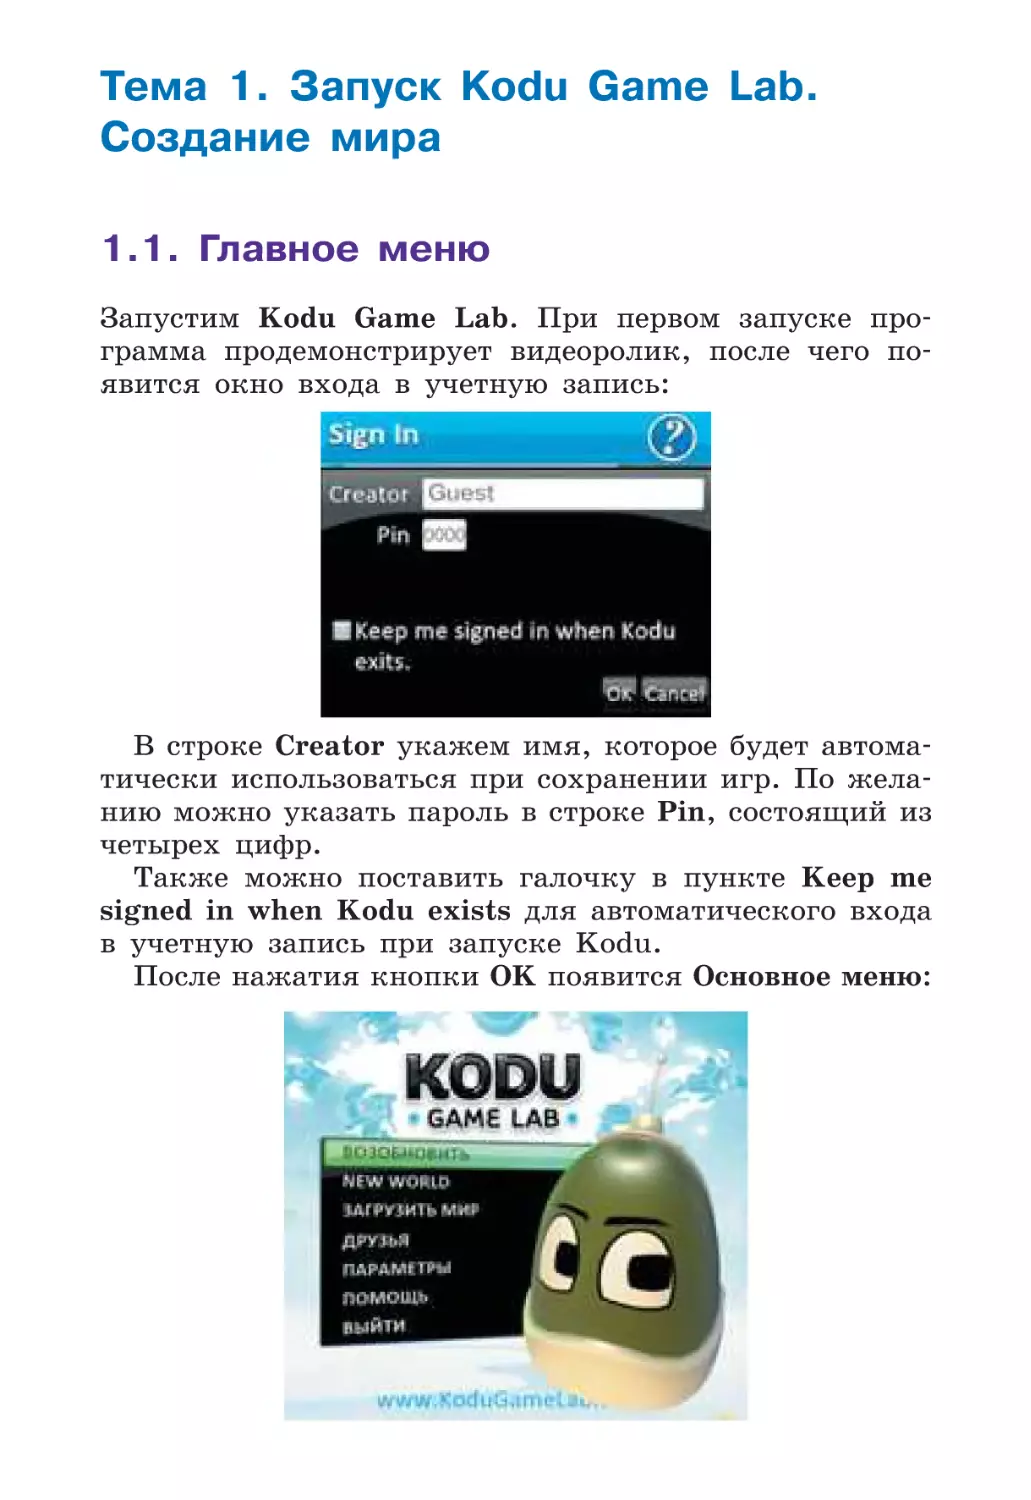 Тема 1. Запуск Kodu Game Lab. Создание мира
1.1. Главное меню